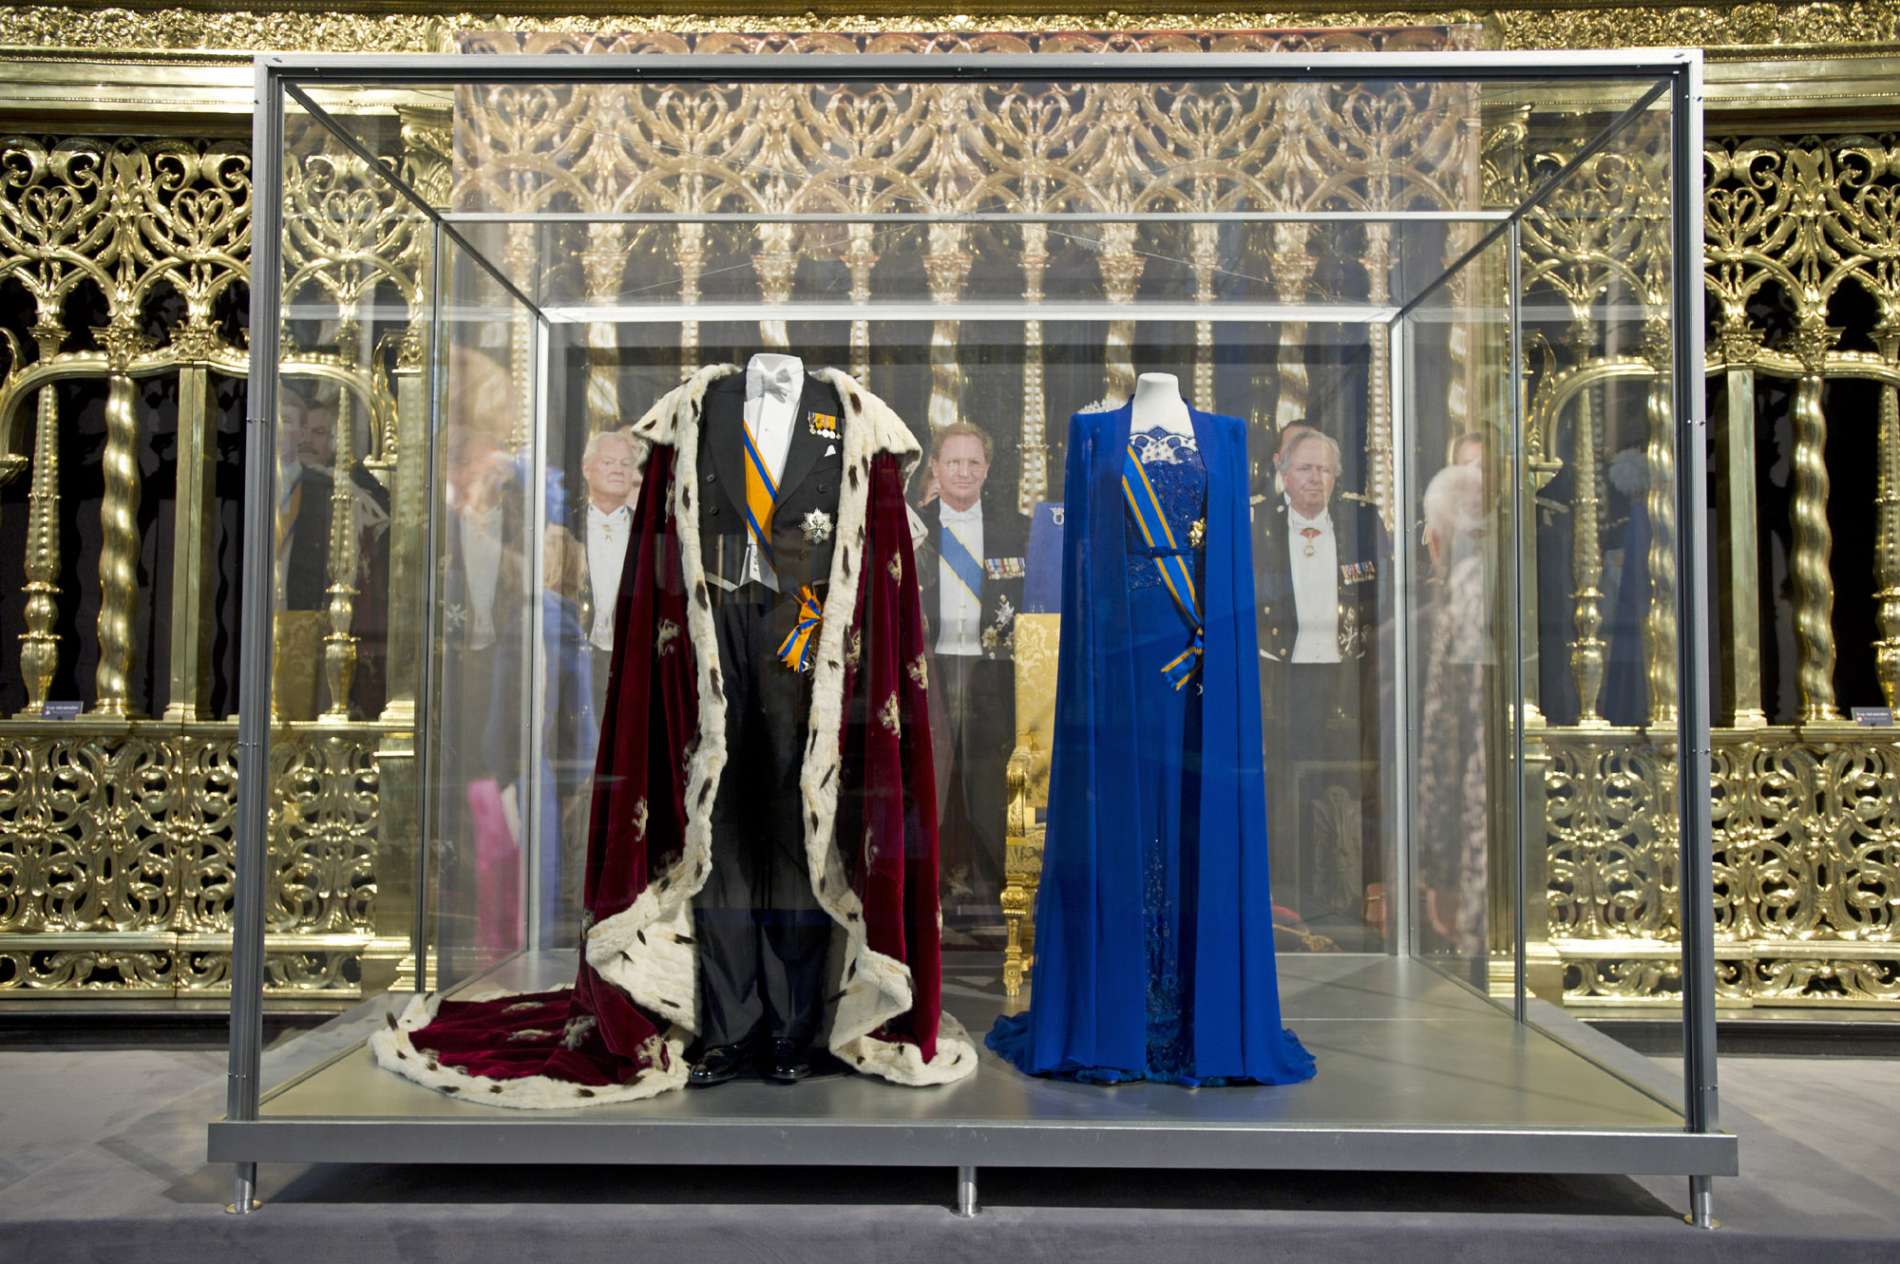 130618 Koningsmantel en rokkostuum van koning Willem-Alexander en de jurk van koningin Máxima in De Nieuwe Kerk in Amsterdam